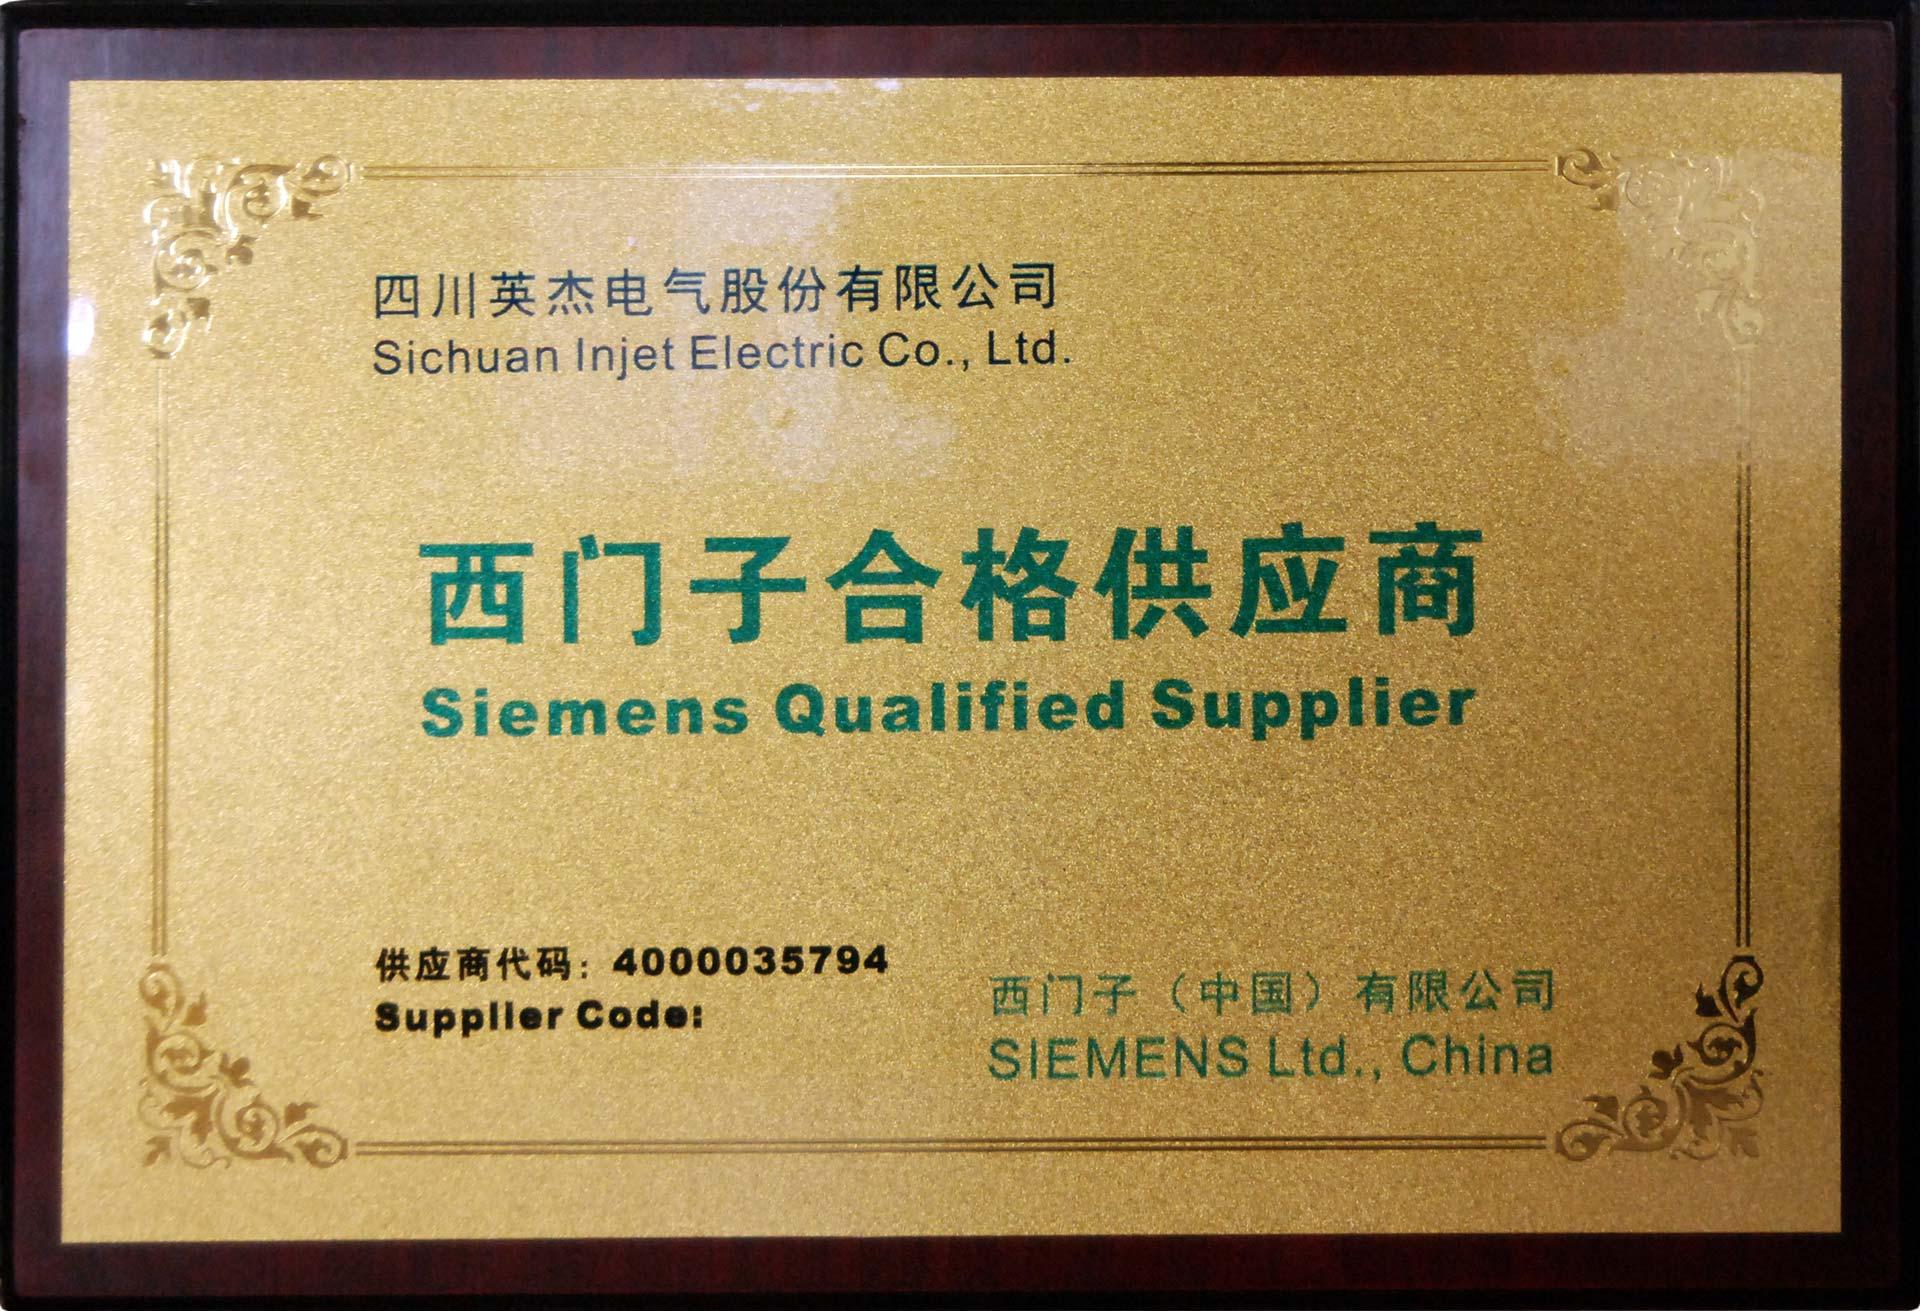 Siemens Qualified Supplier